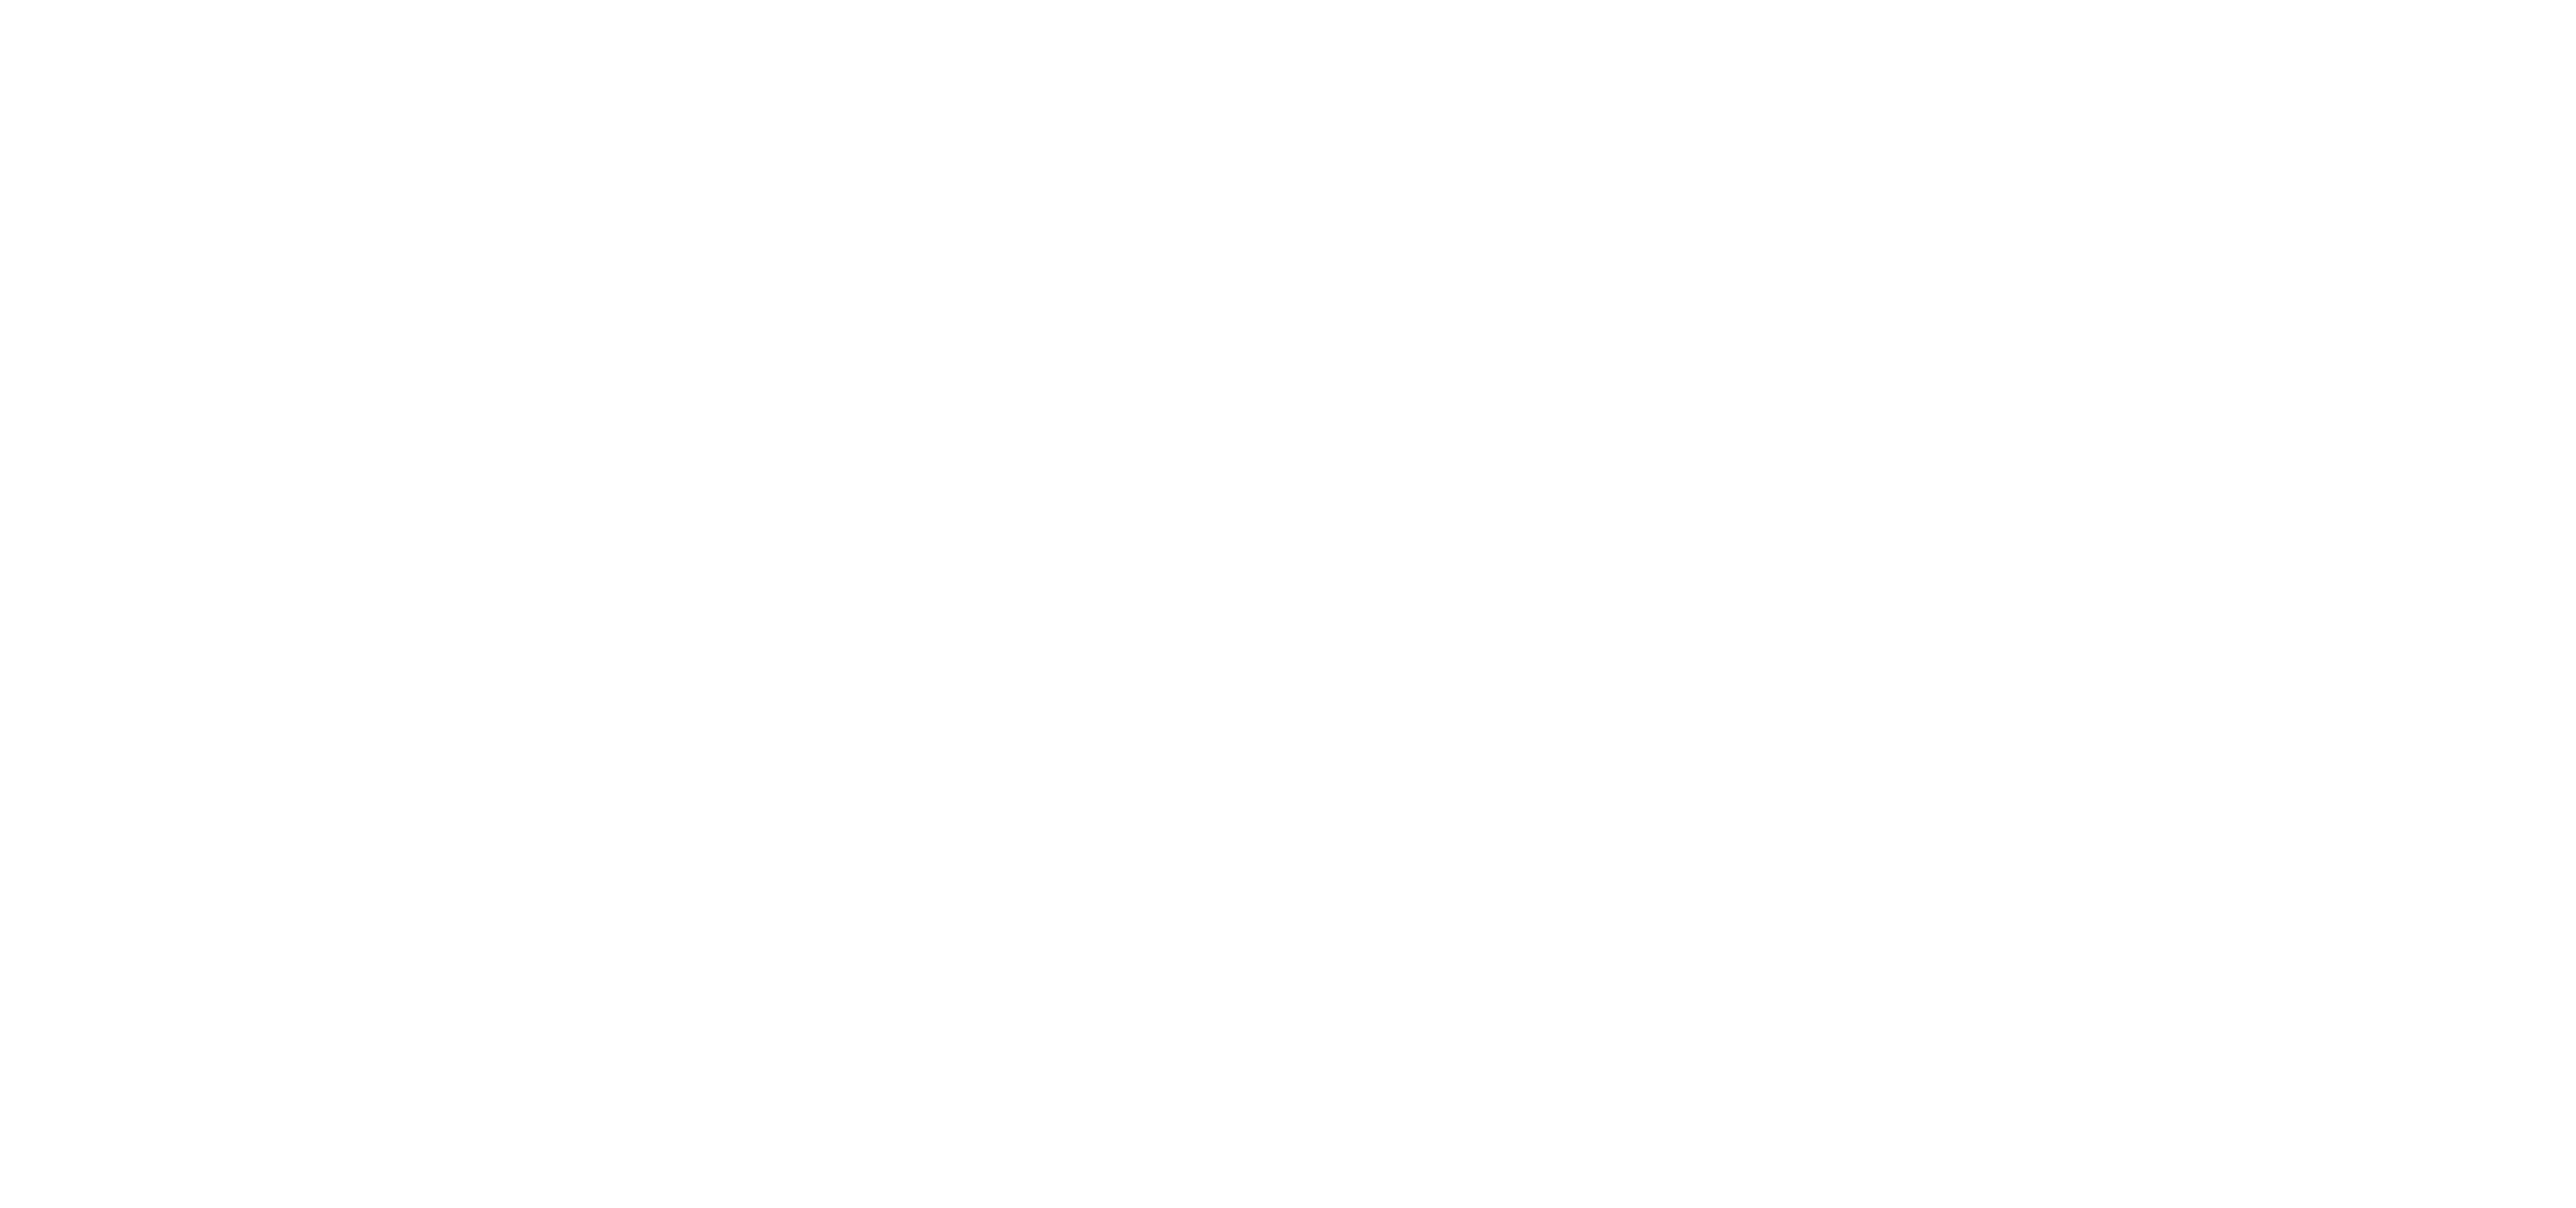 Peninsula Streams & Shorelines Since 2002